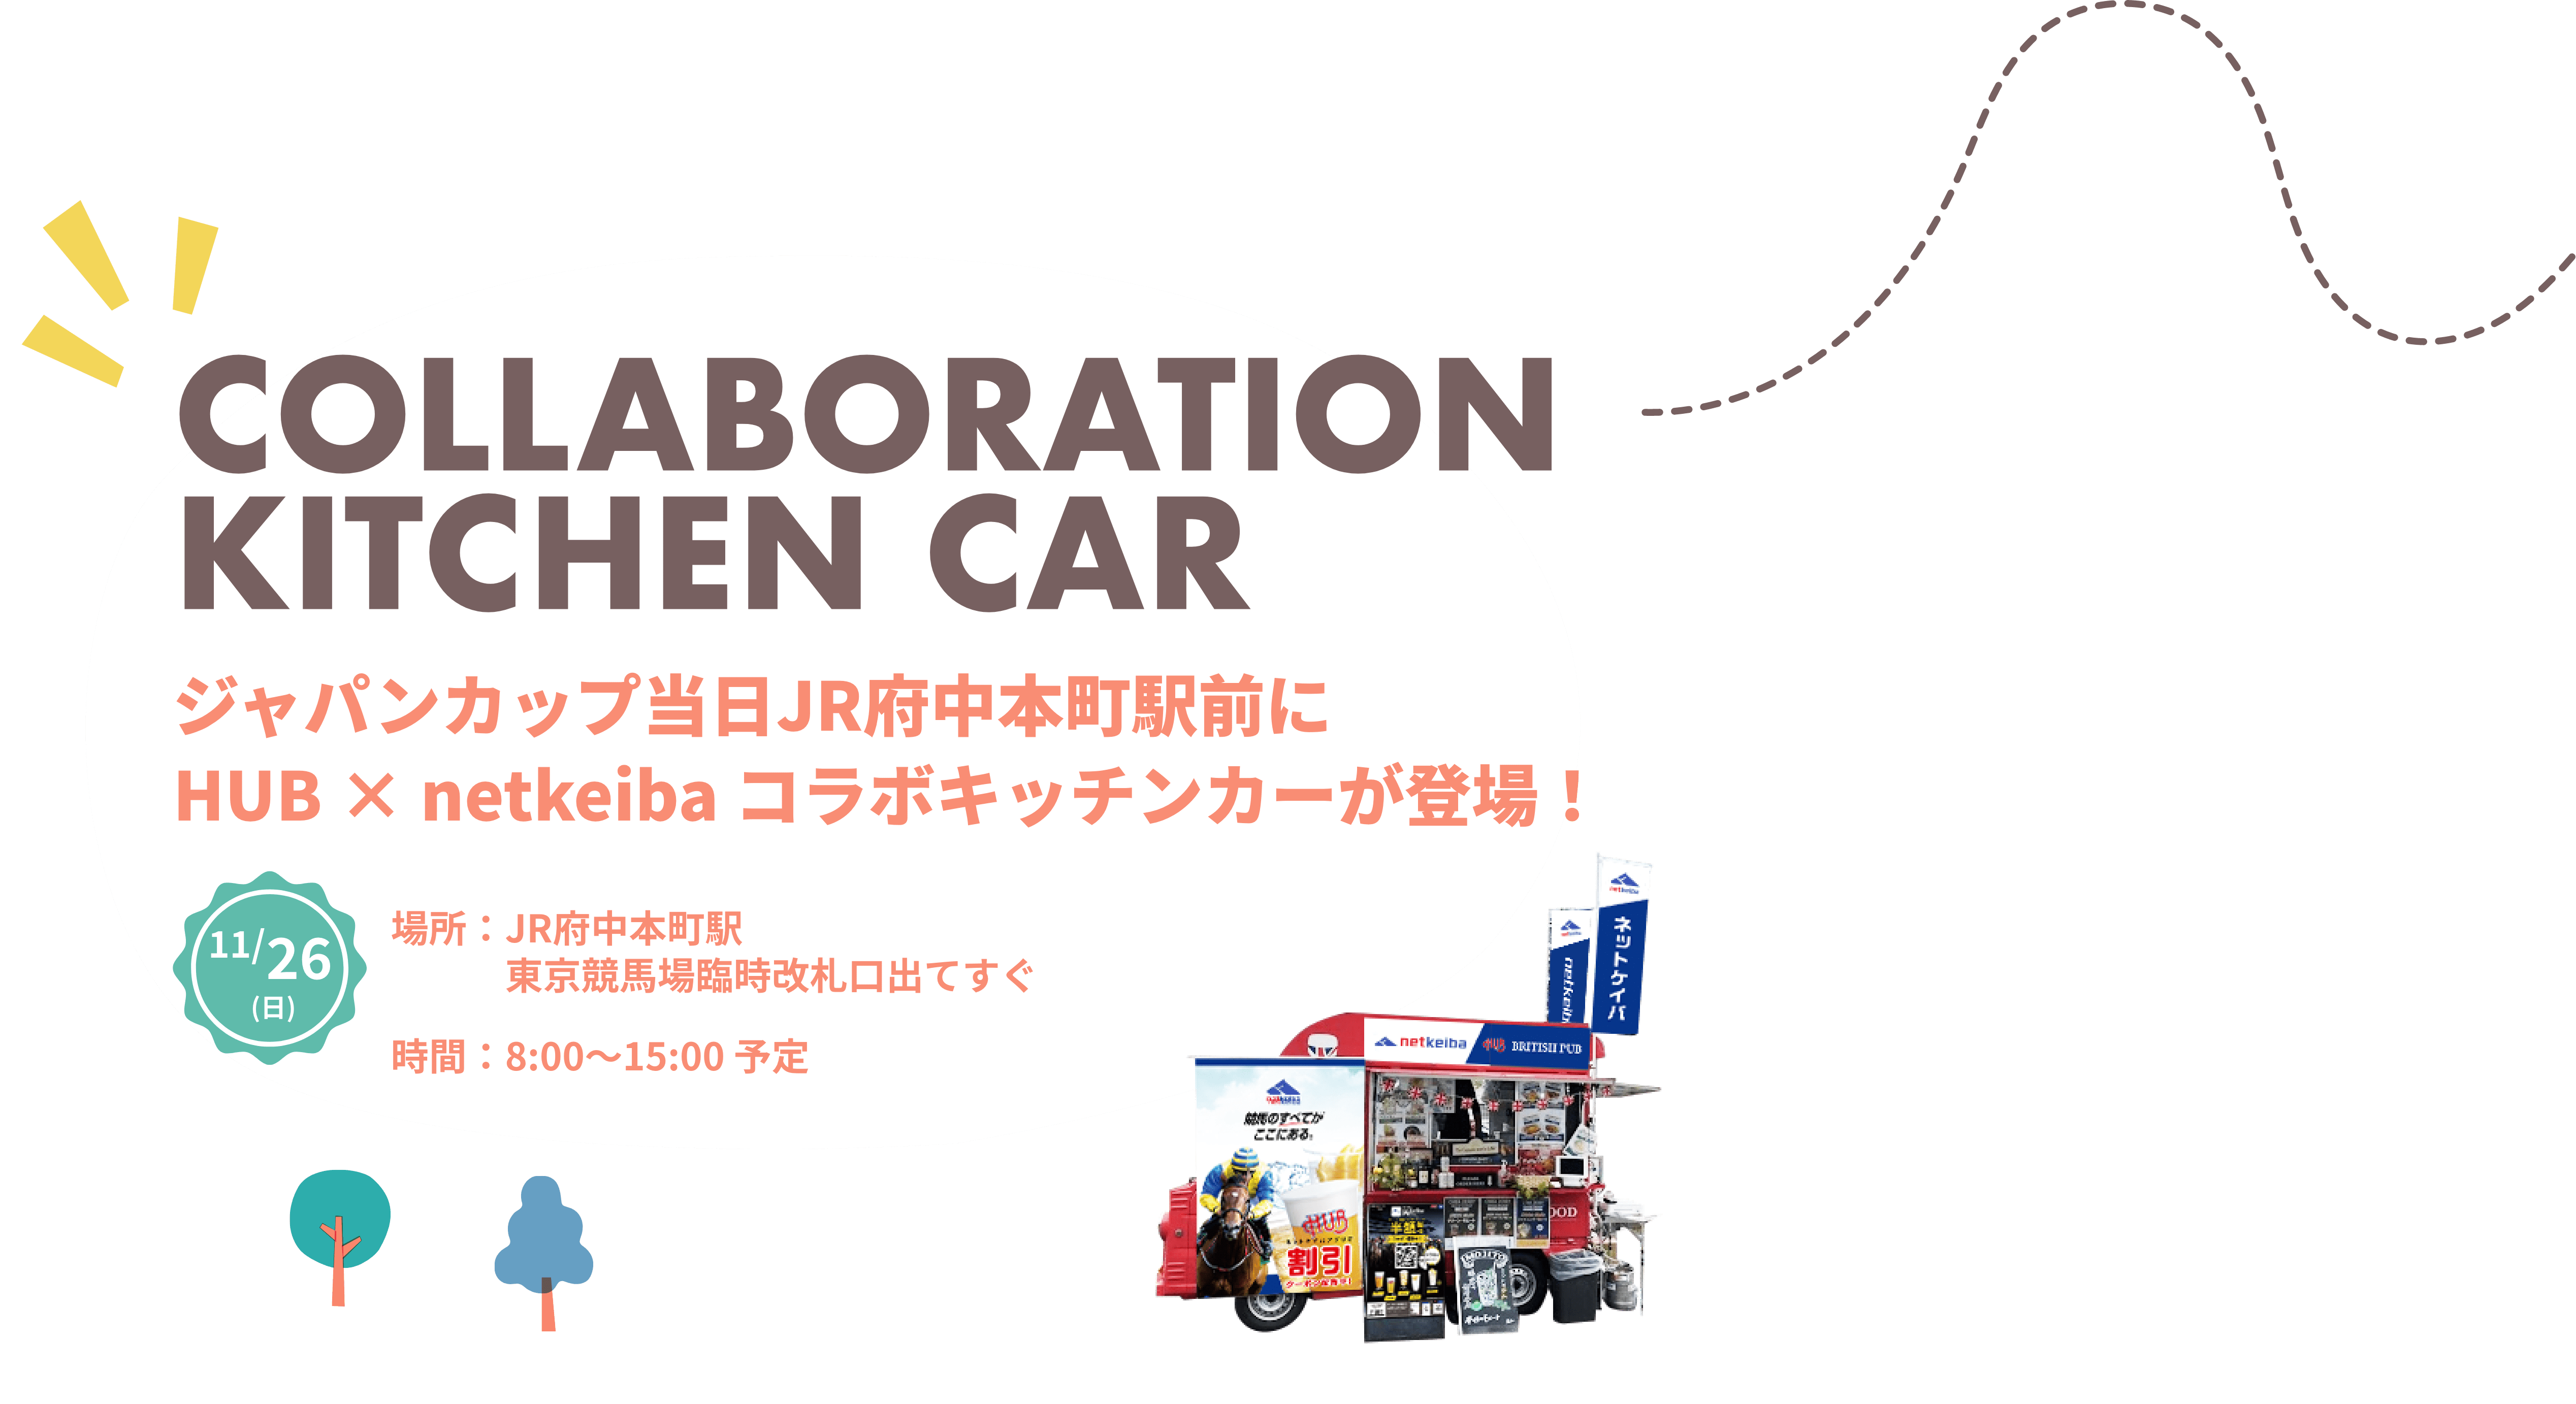 ジャパンカップ当日JR府中本町駅前にHUB × netkeiba コラボキッチンカーが登場！